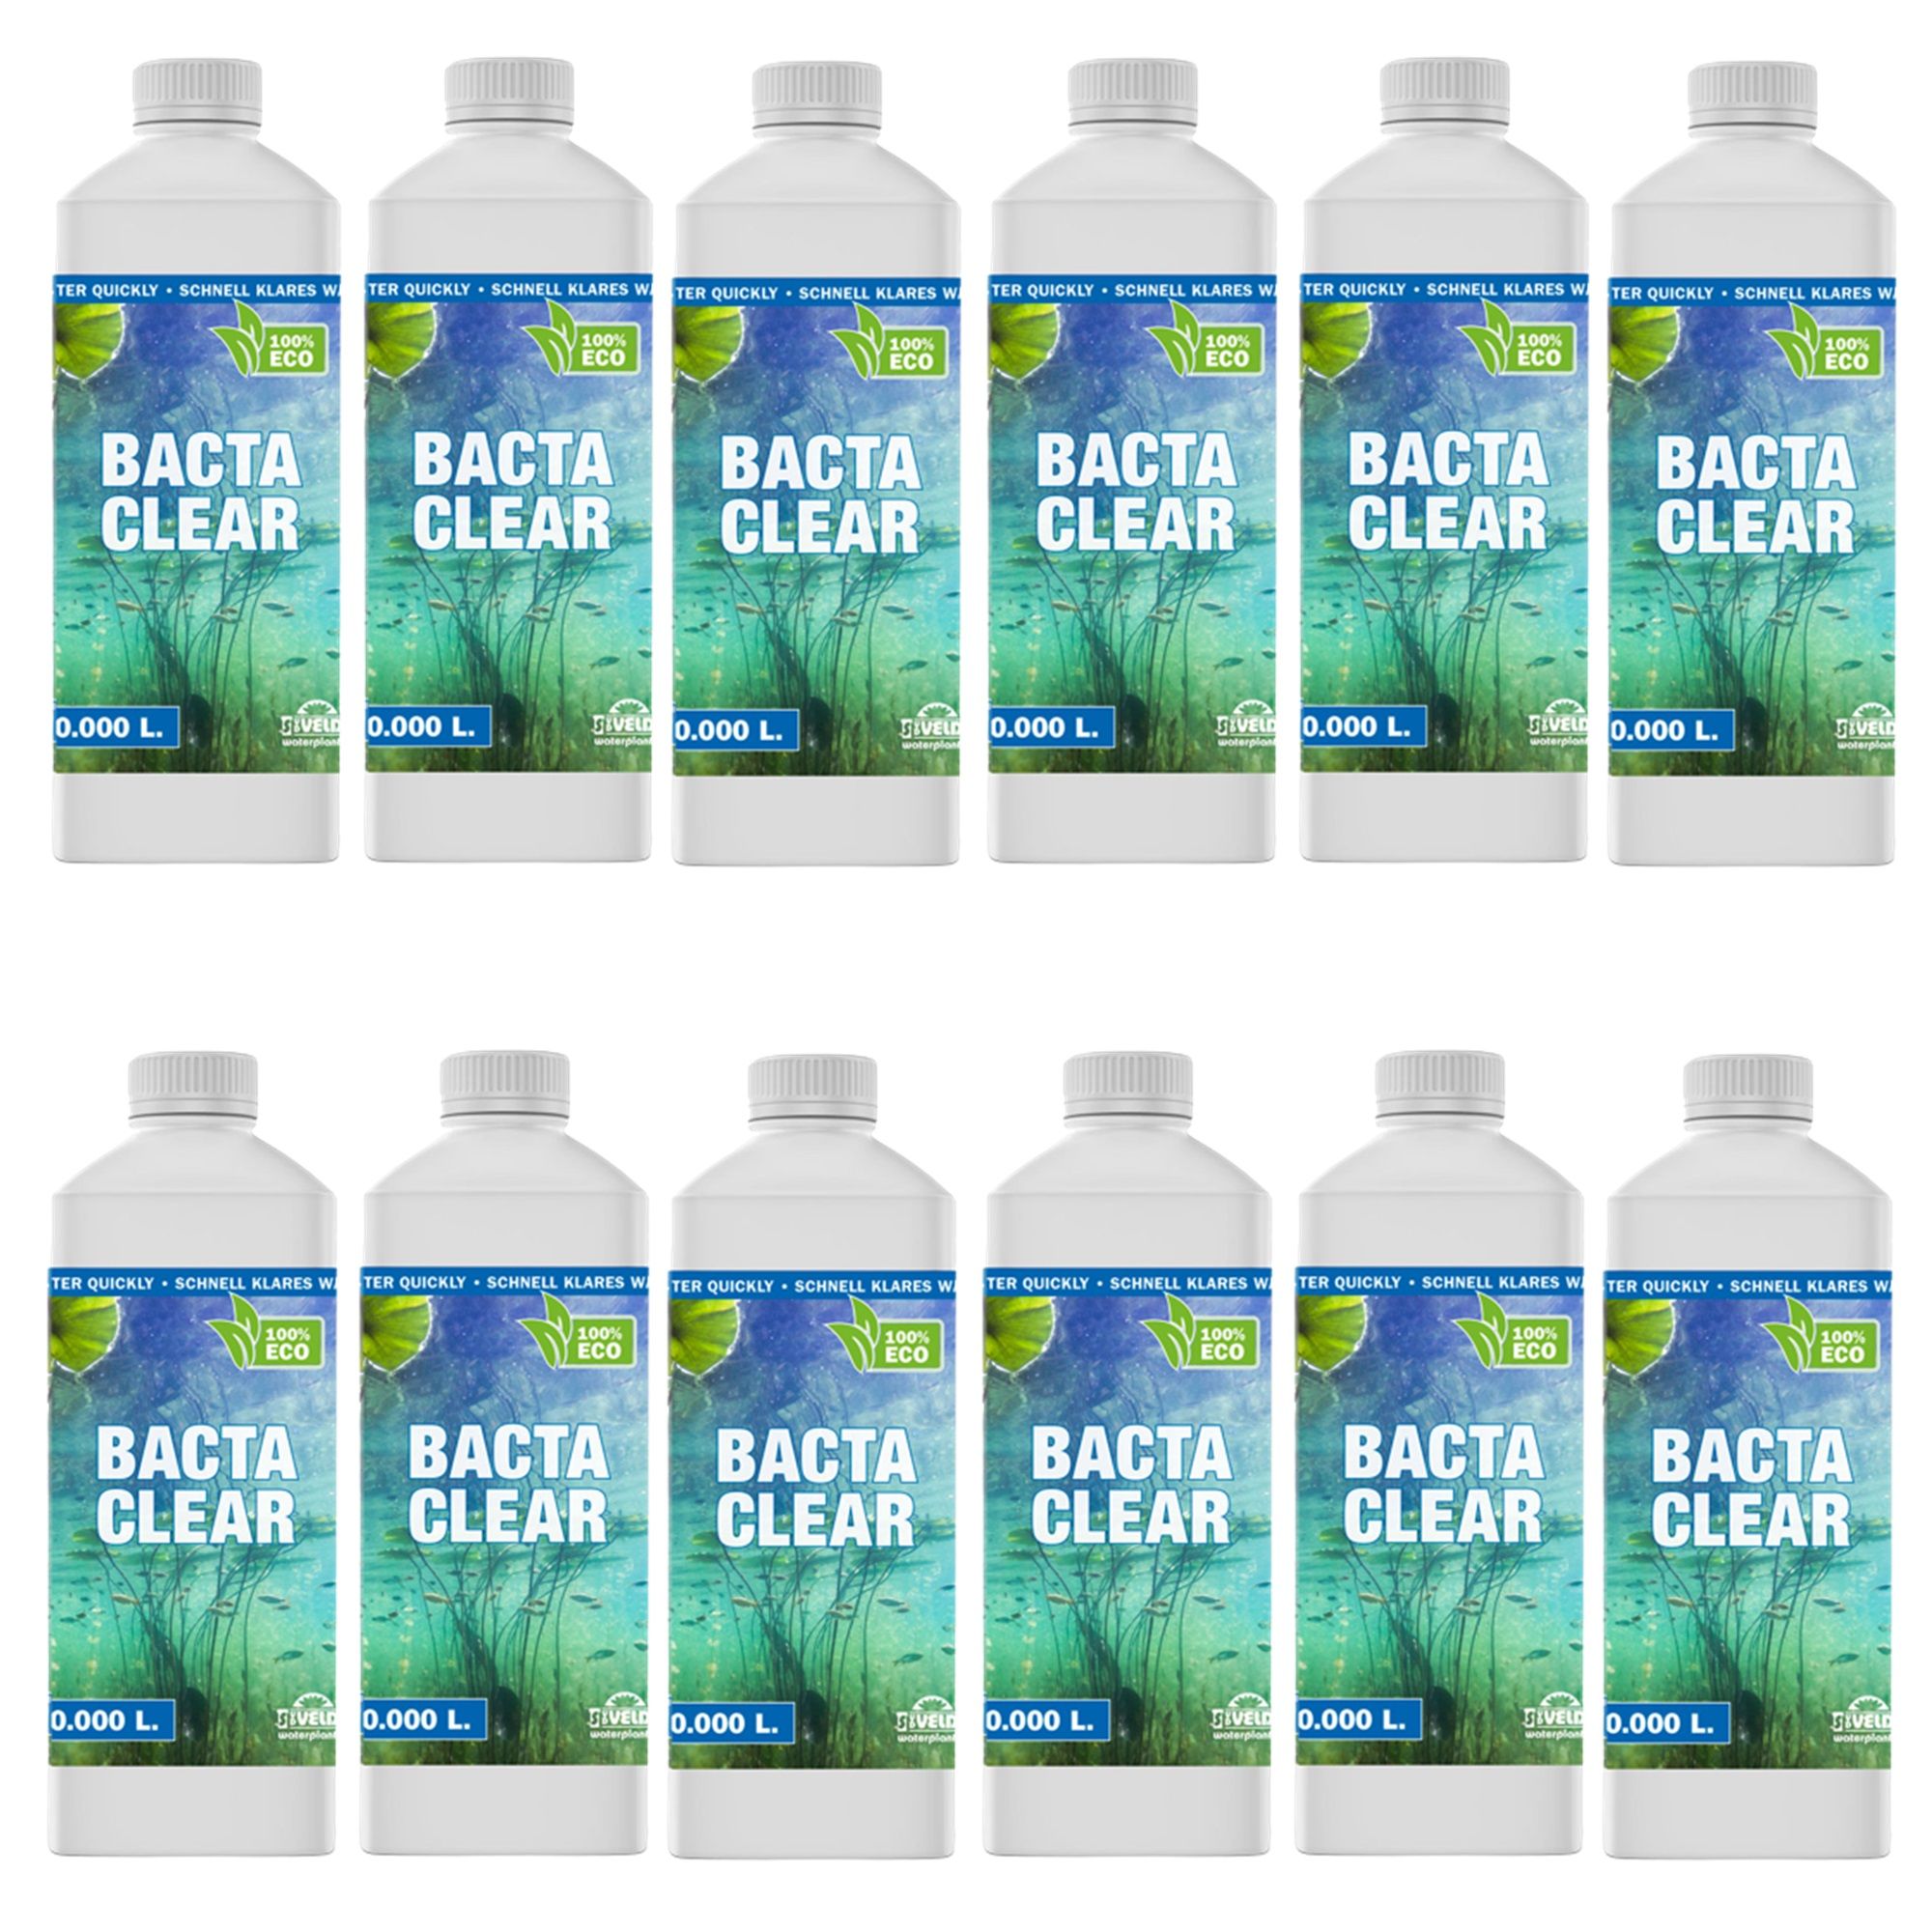 vdvelde.com -  Bacta Clear Vijverbacteriën - 1 Liter Algenbestrijding Vijver - 12 flessen - Bacterien Vijver en Algen Verwijderaar - 100% Biologisch Draadalgen Bestrijdingsmiddel - Van der Velde Waterplanten